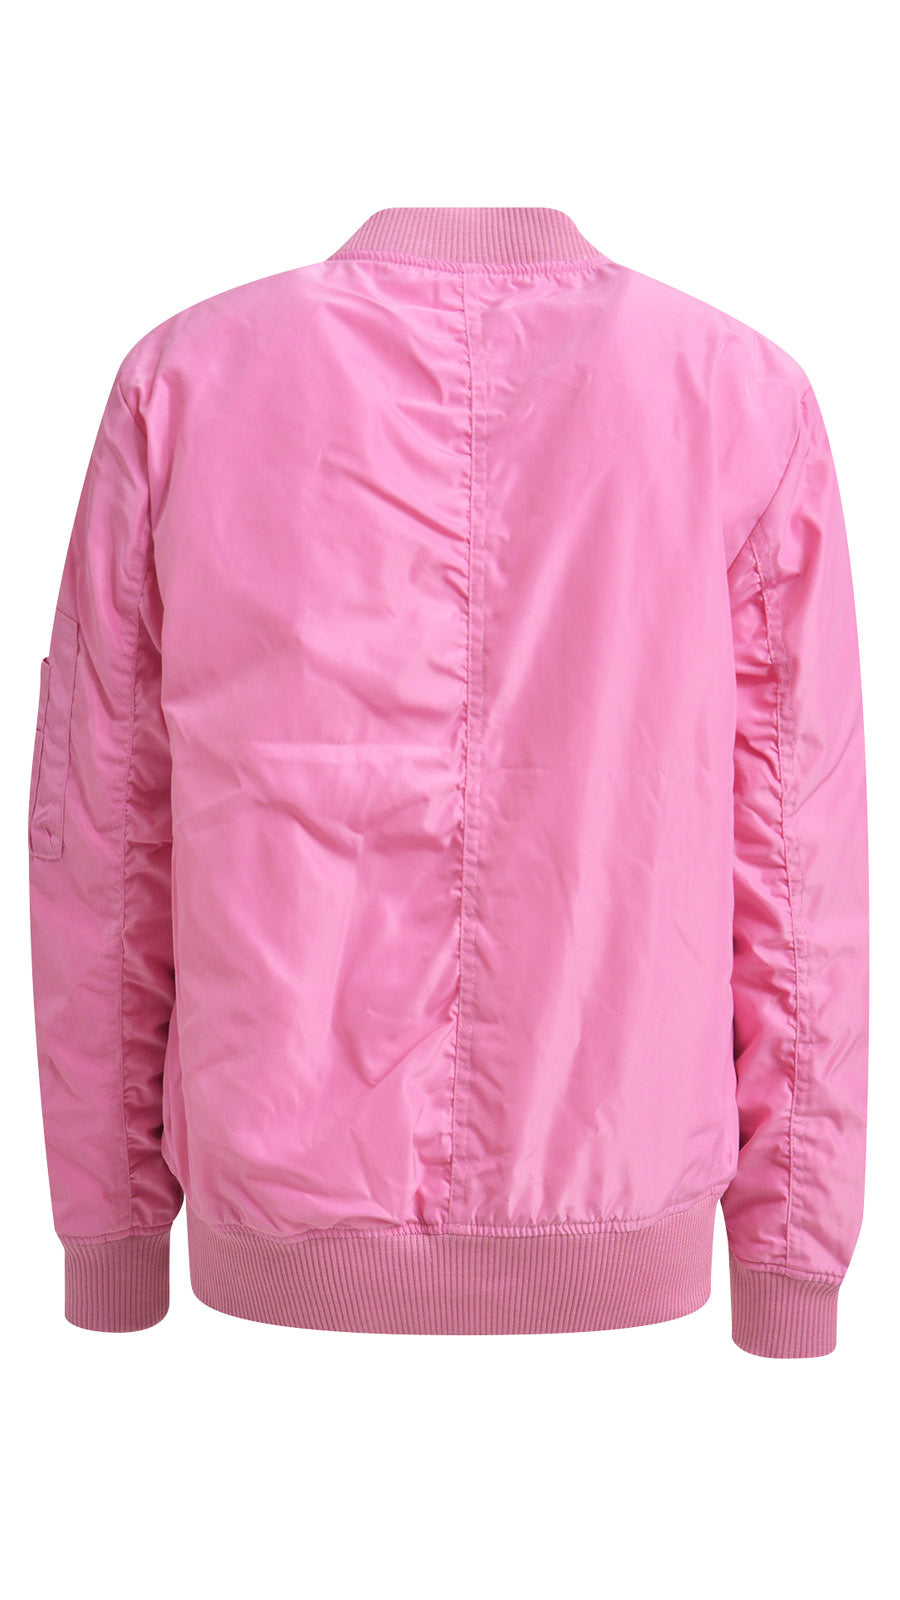 Flight Jacket (Soft pink) by Smith & Soul